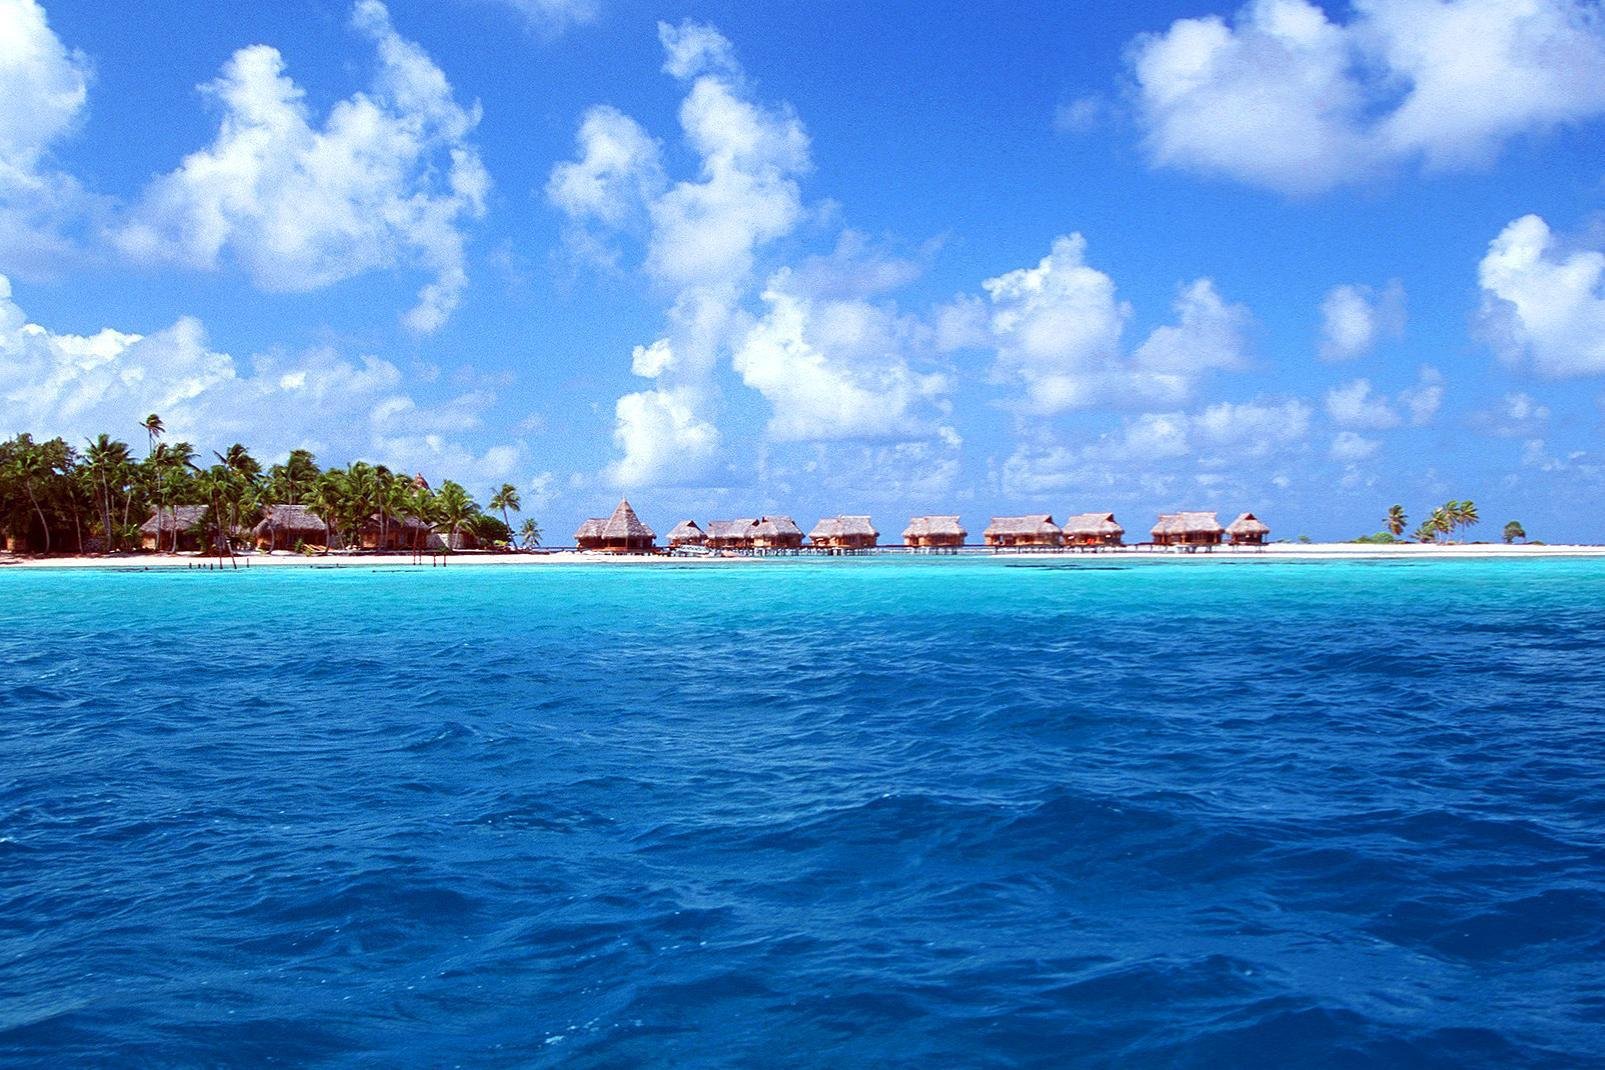 Ancien volcan disparu sous les eaux, Tikehau est un atoll, également appelé île basse. Son anneau corallien, qui représente l'étendue de l'ancien volcan, mesure 28 km de diamètre. Les îlots émergés, formés par l'accumulation de corail, sont plantés de cocotiers, arbres de fer et badamiers. Superbe et préservé, l'atoll est réputé pour ses plages de sable rose ainsi que pour son lagon, l'un des plus ...